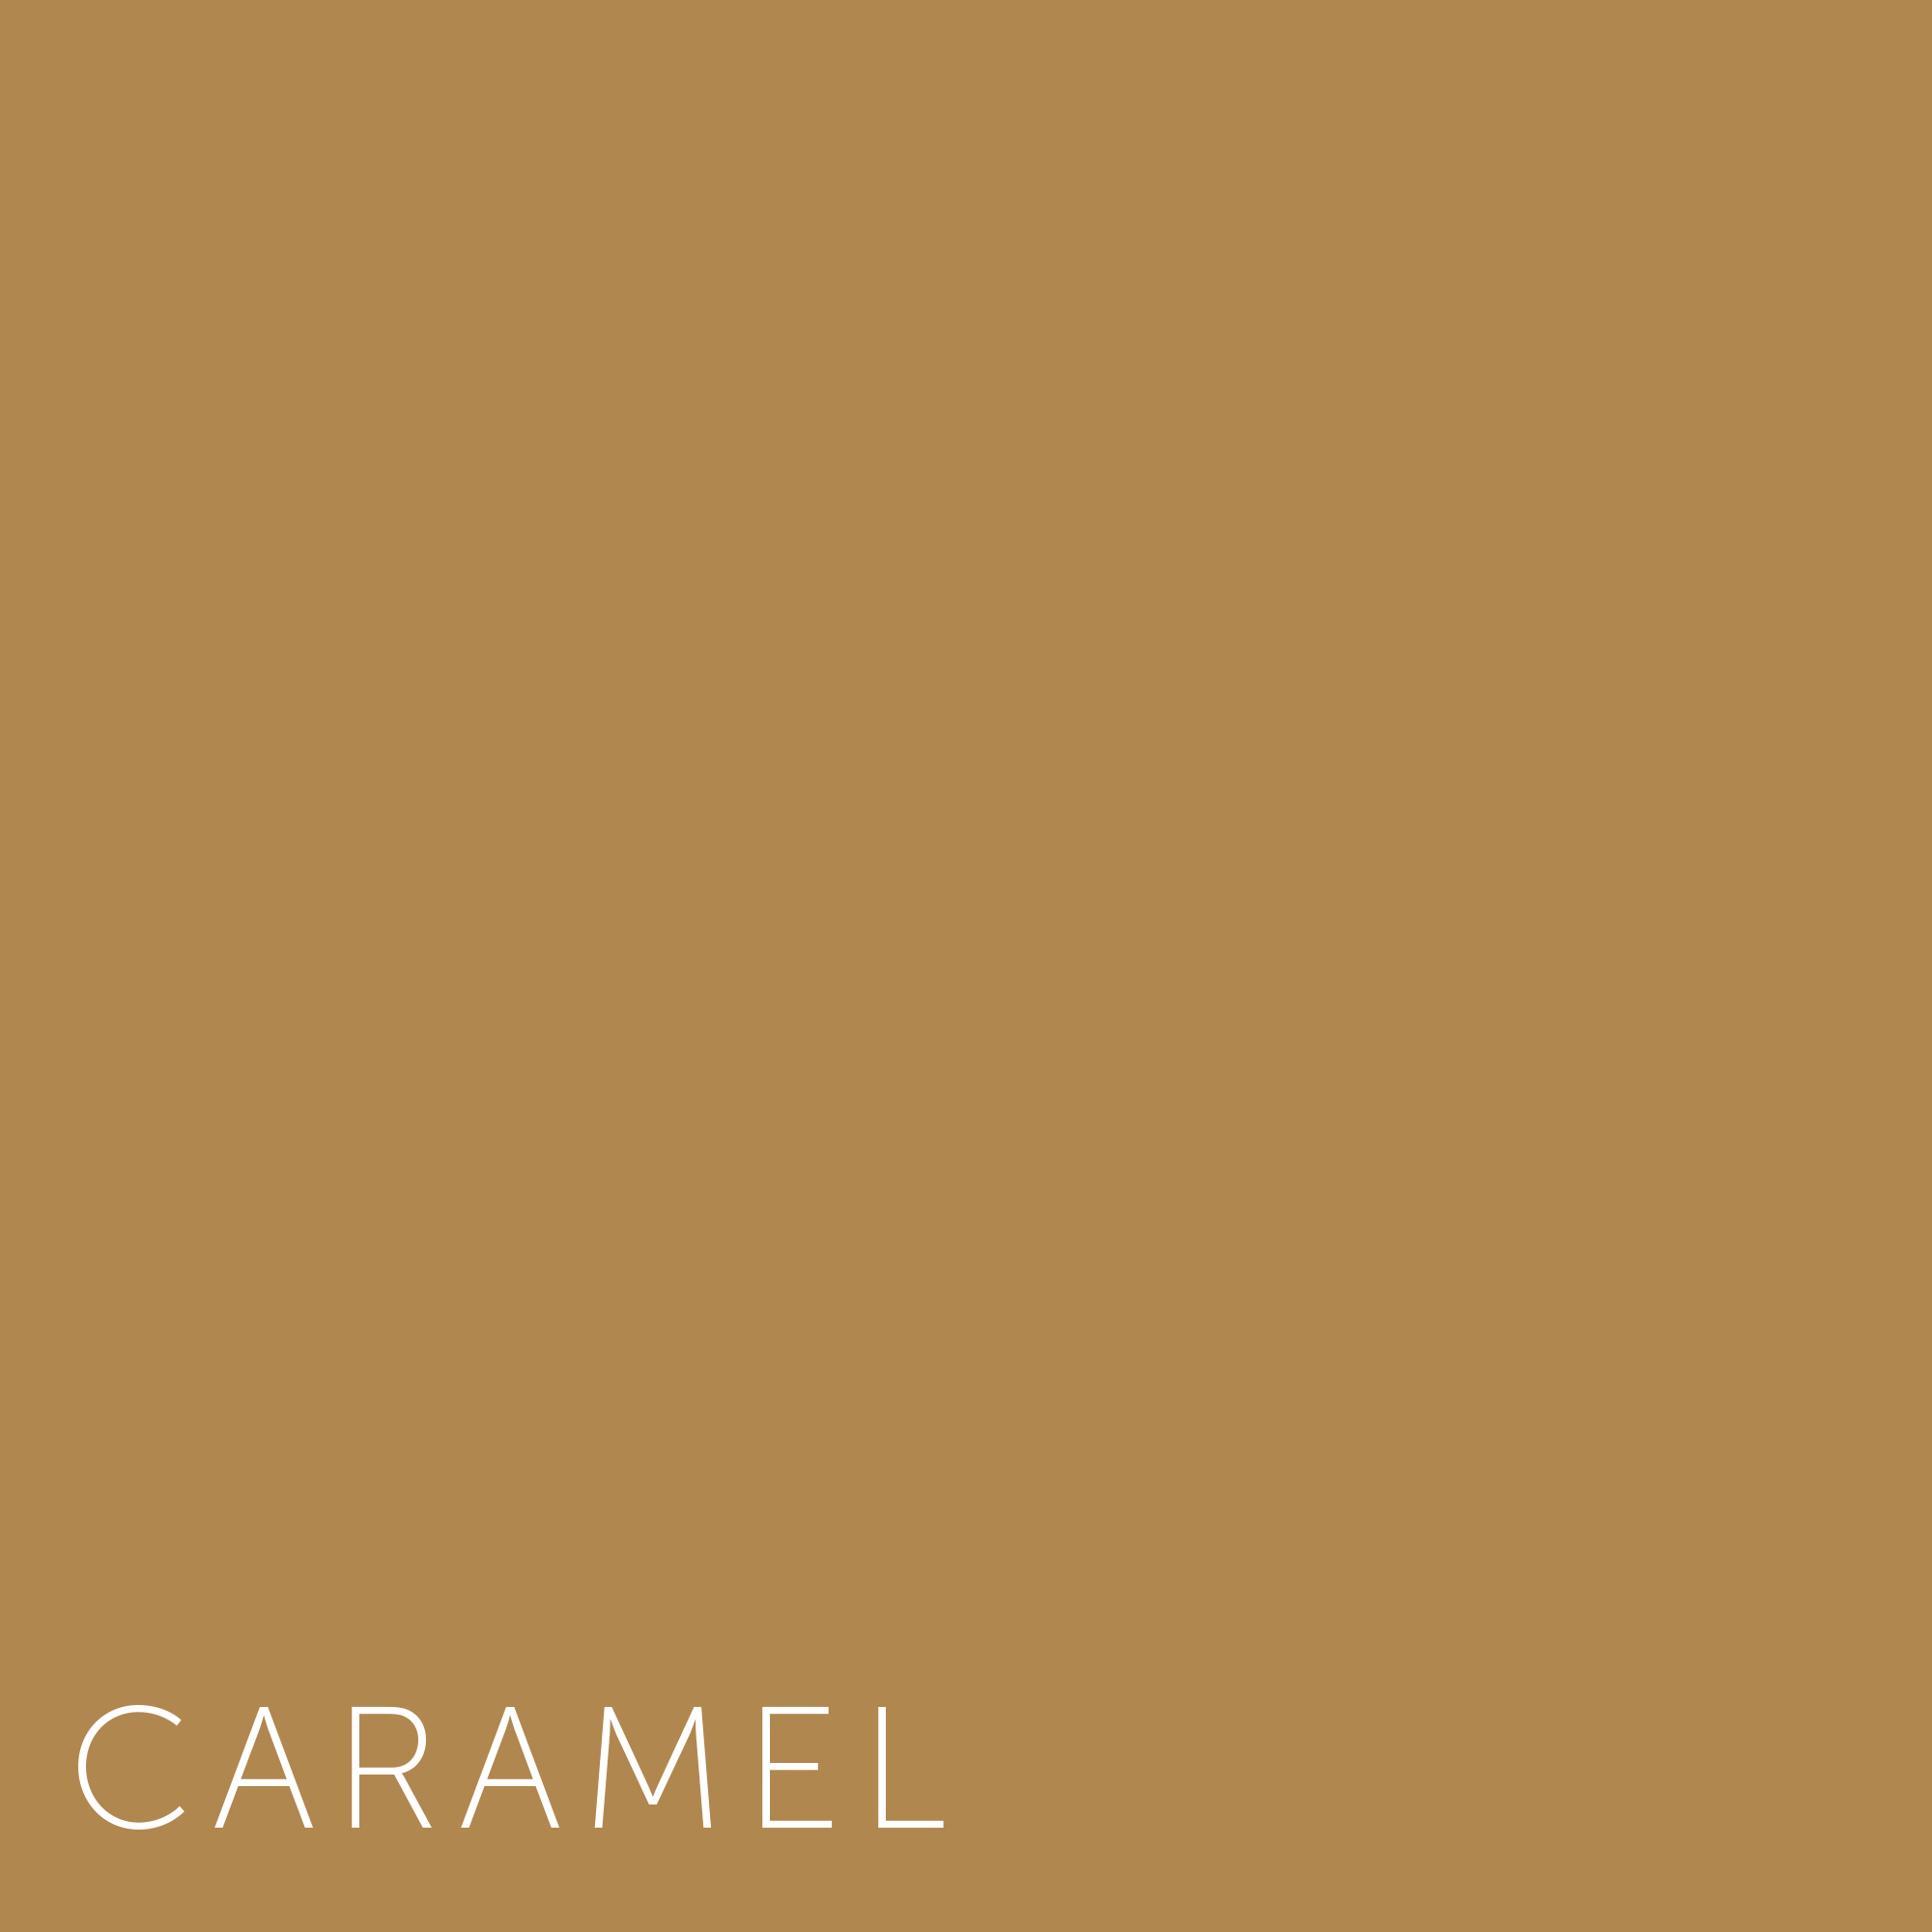 Top gegevens rekken Verf - Kleuren Caramel | Home Made By